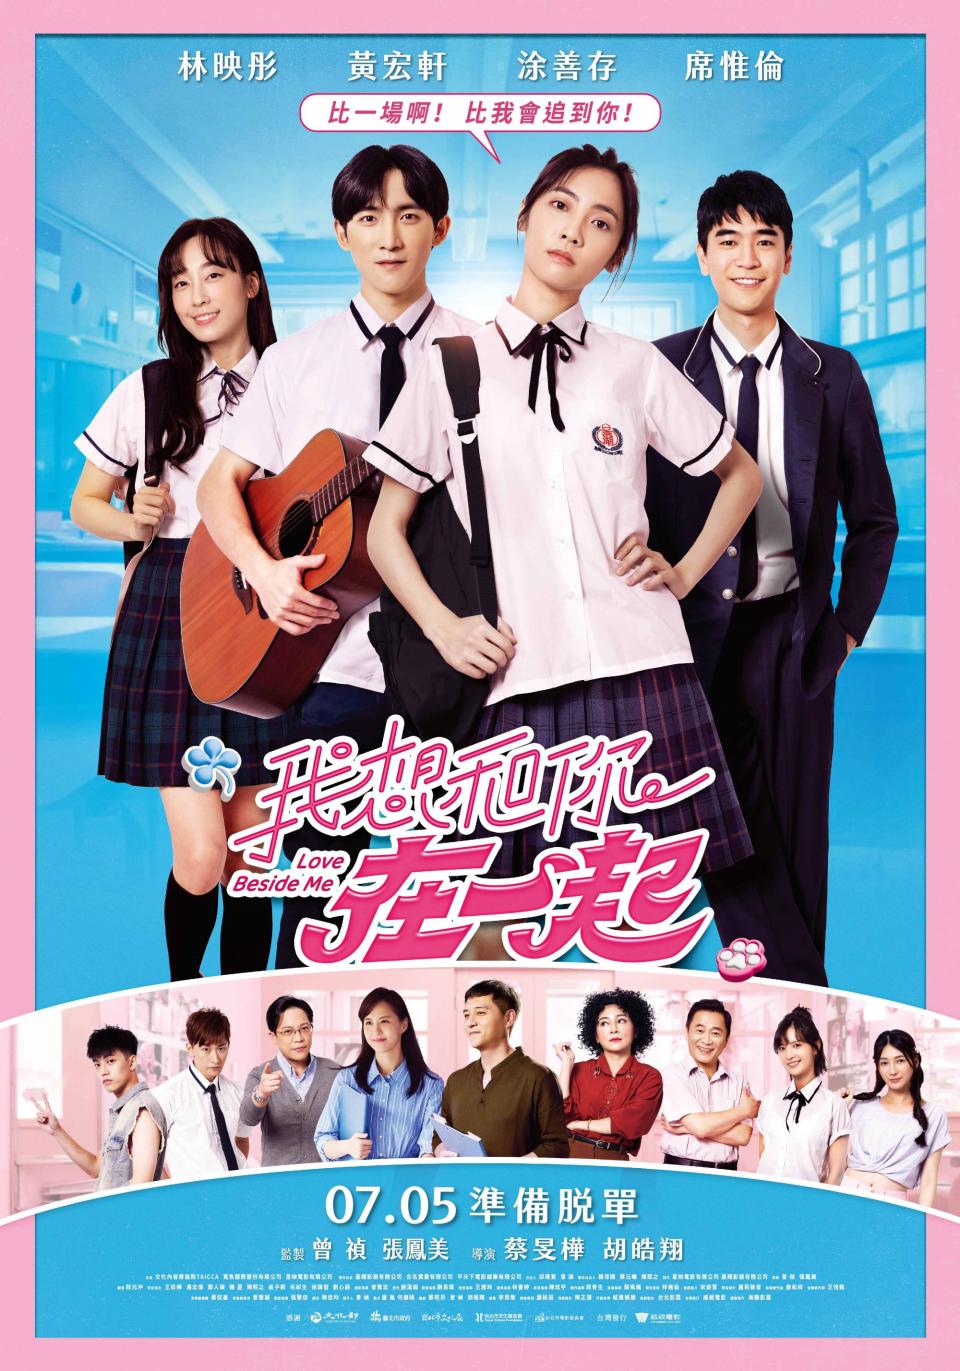 ▲青春愛情喜劇電影《我想和你在一起》將於7月5日全台影城正式上映。